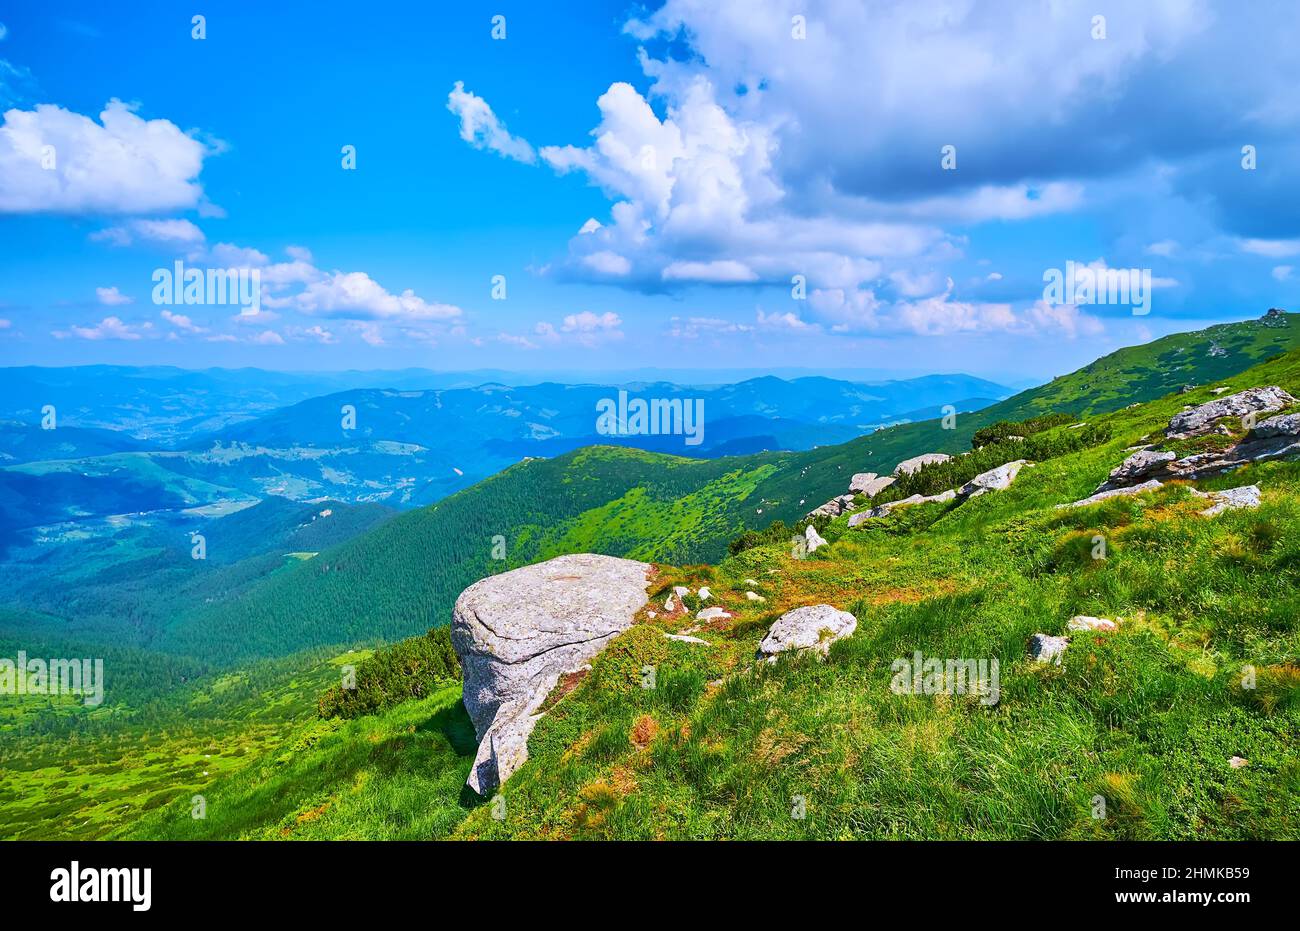 Impressive mountain landscape of Chornohora range from the peak of Mount Eared Stone (Vykhatyi Kamin), Carpathians, Ukraine Stock Photo